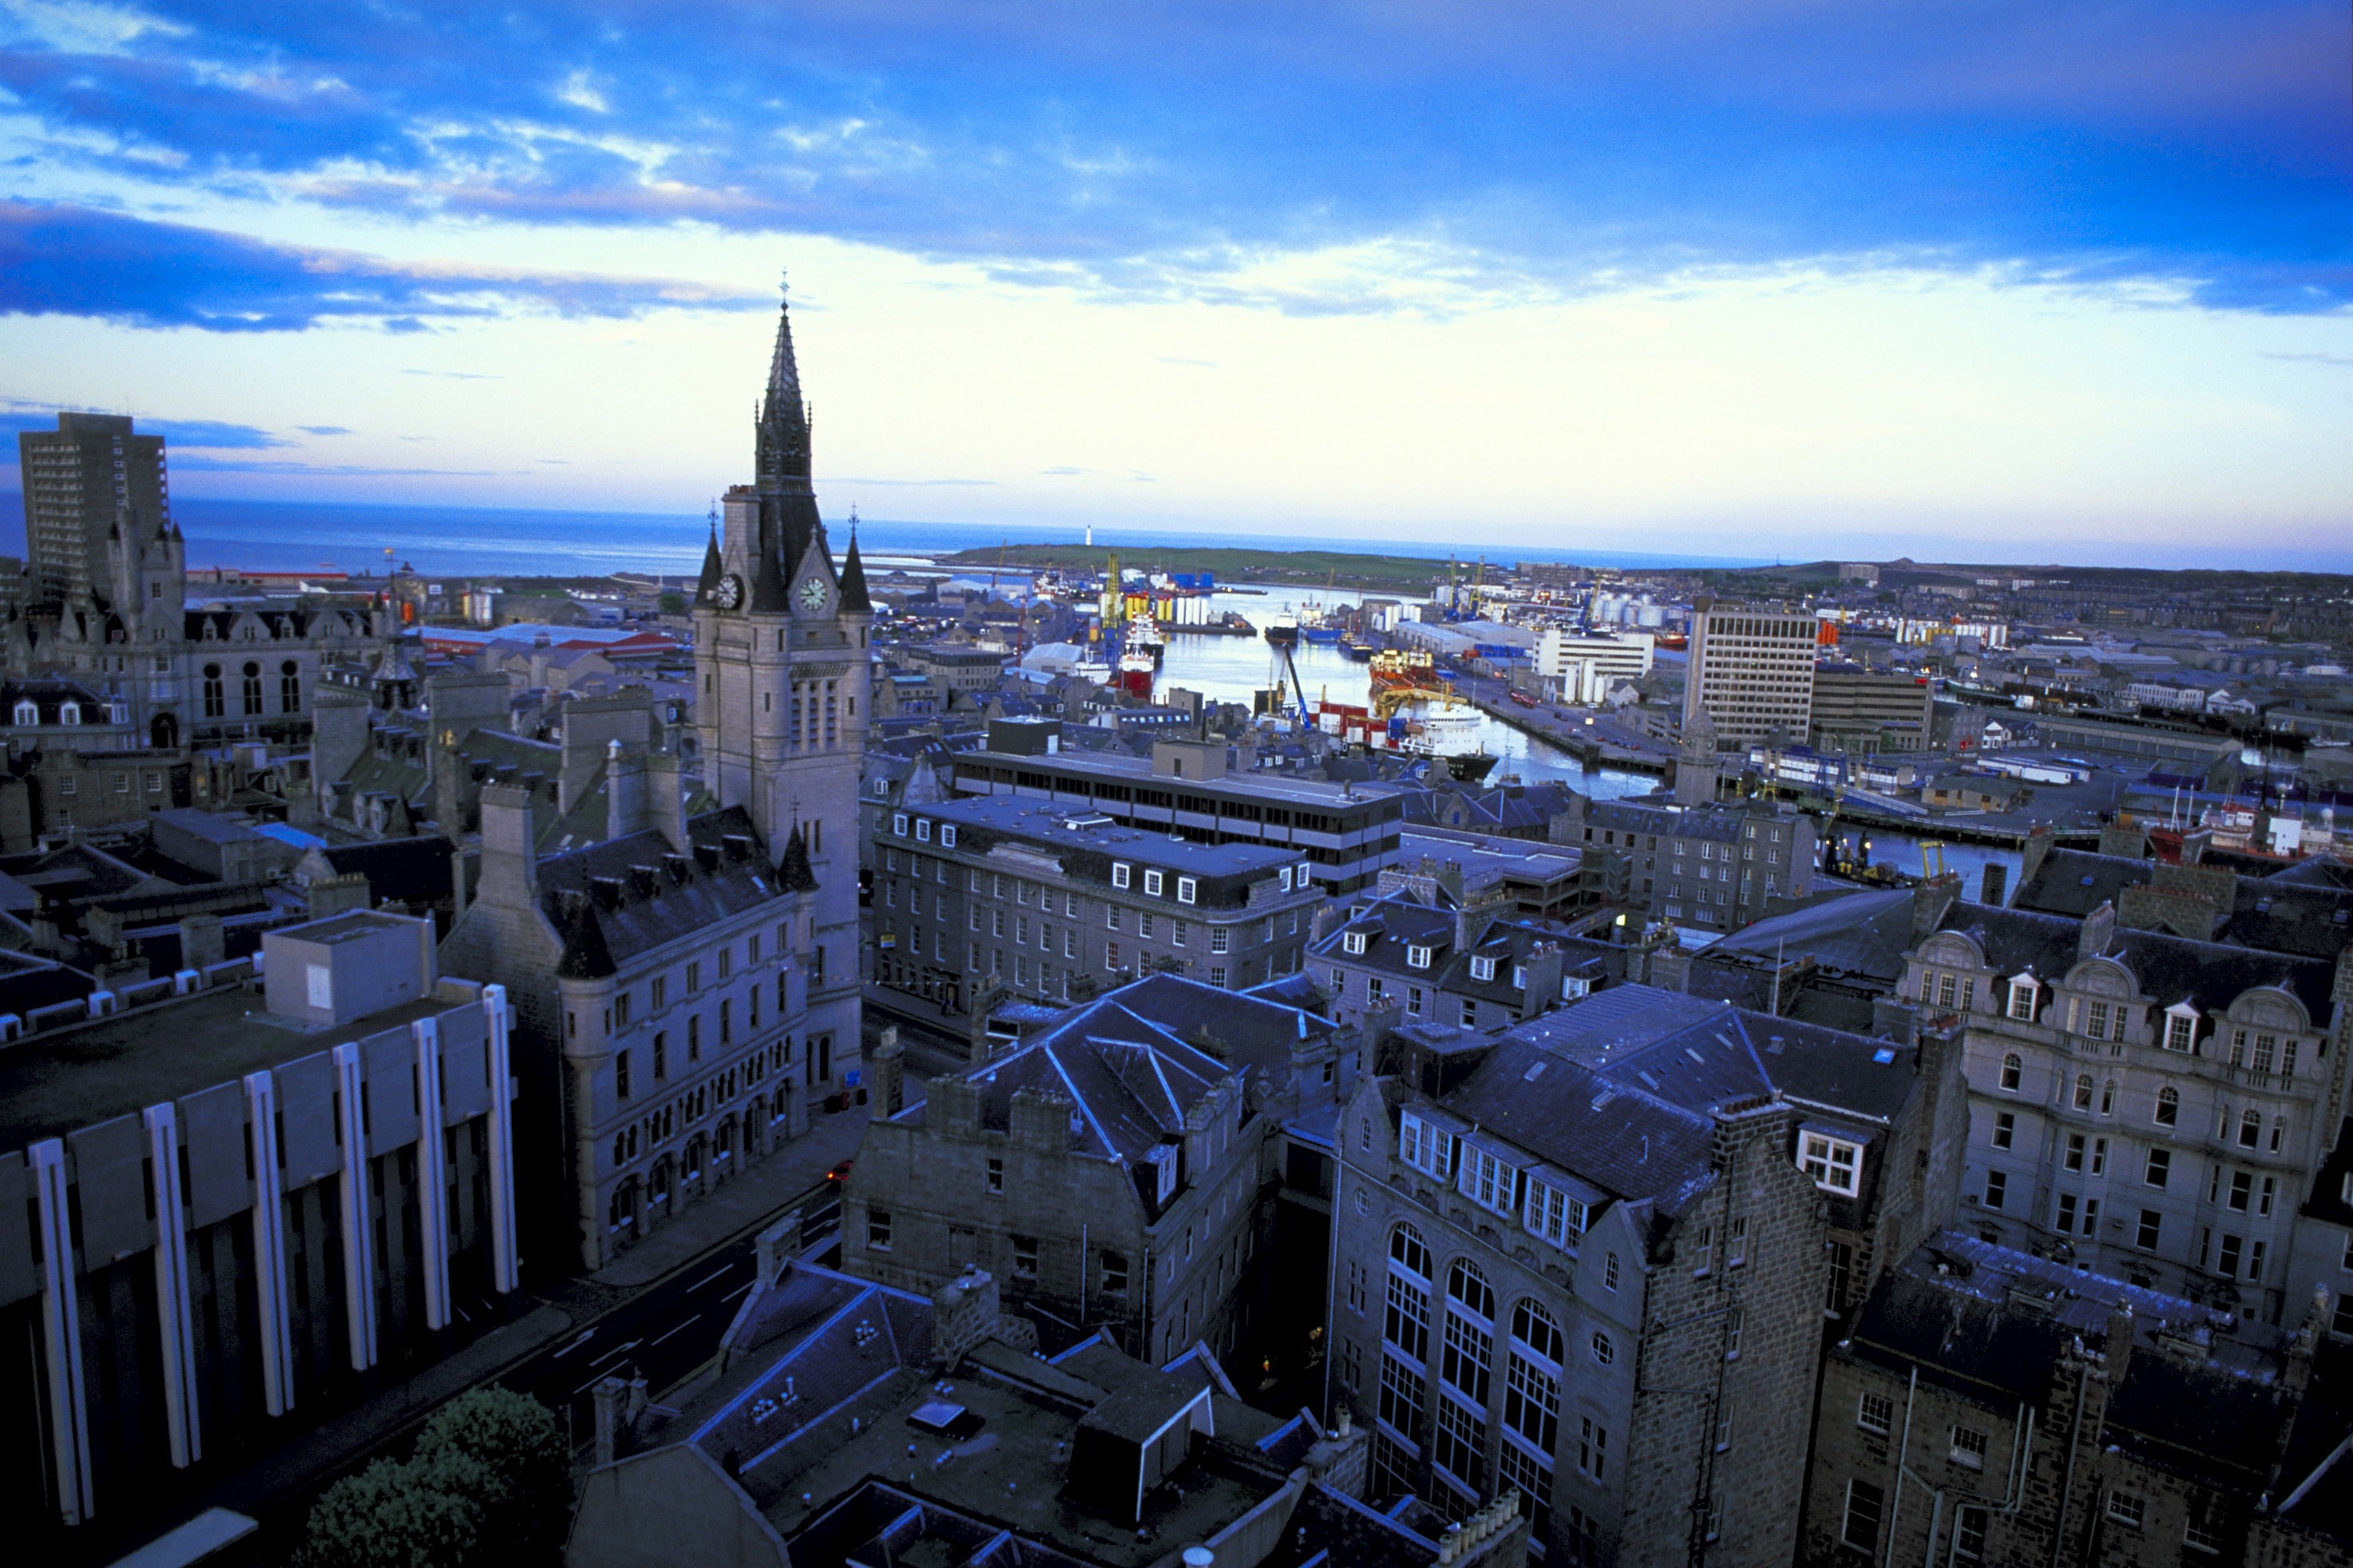 Aberdeen